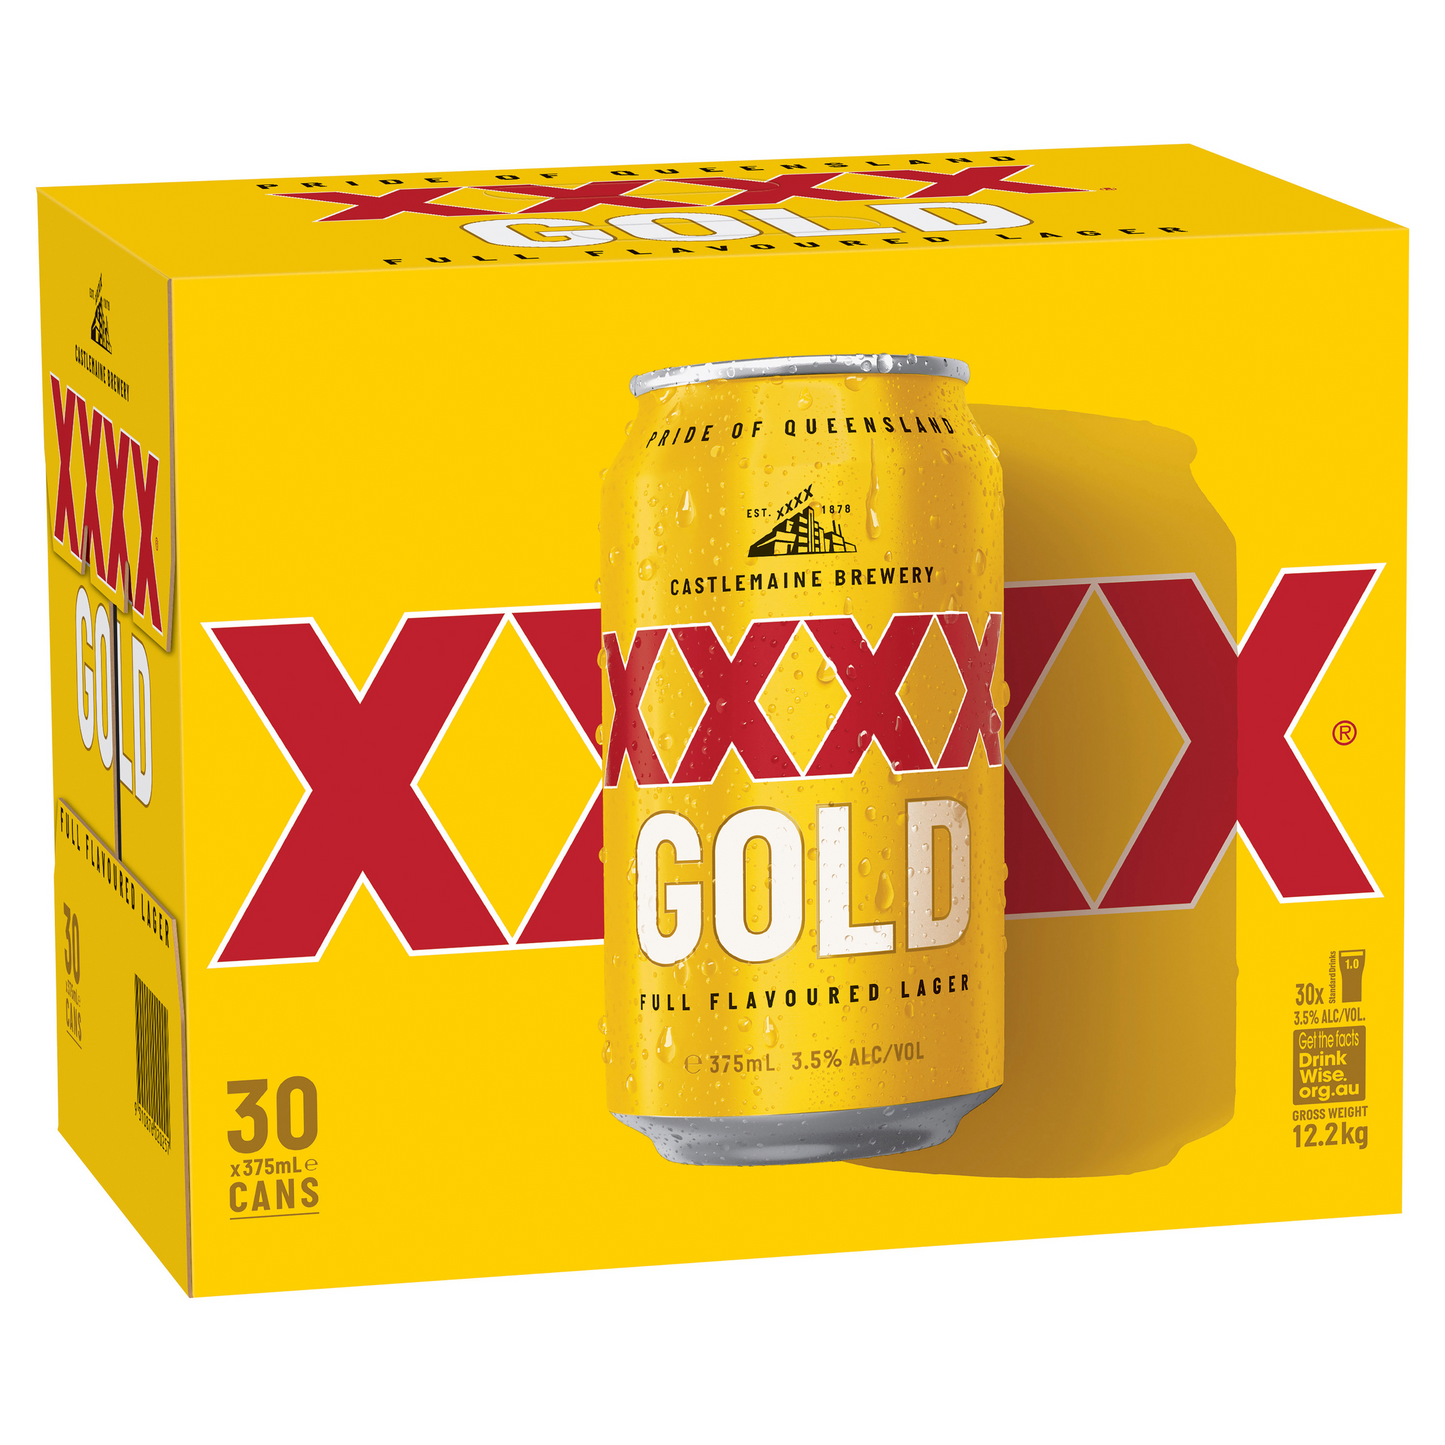 XXXX GOLD 30x375ml cans